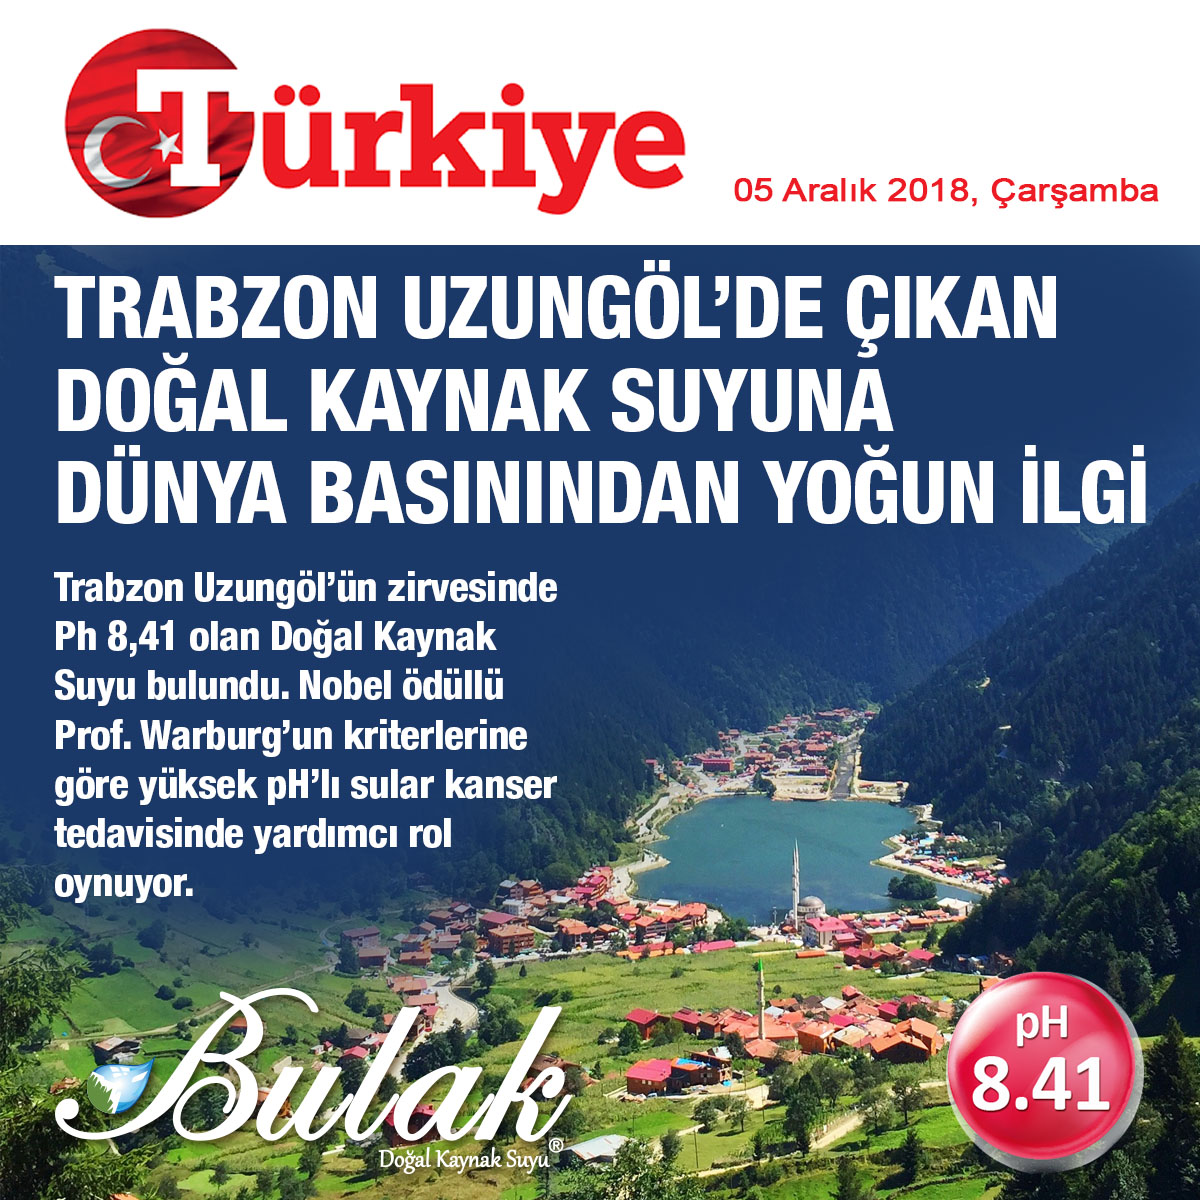 Türkiye’nin en yüksek pH’lı suyu Uzungöl’de bulundu